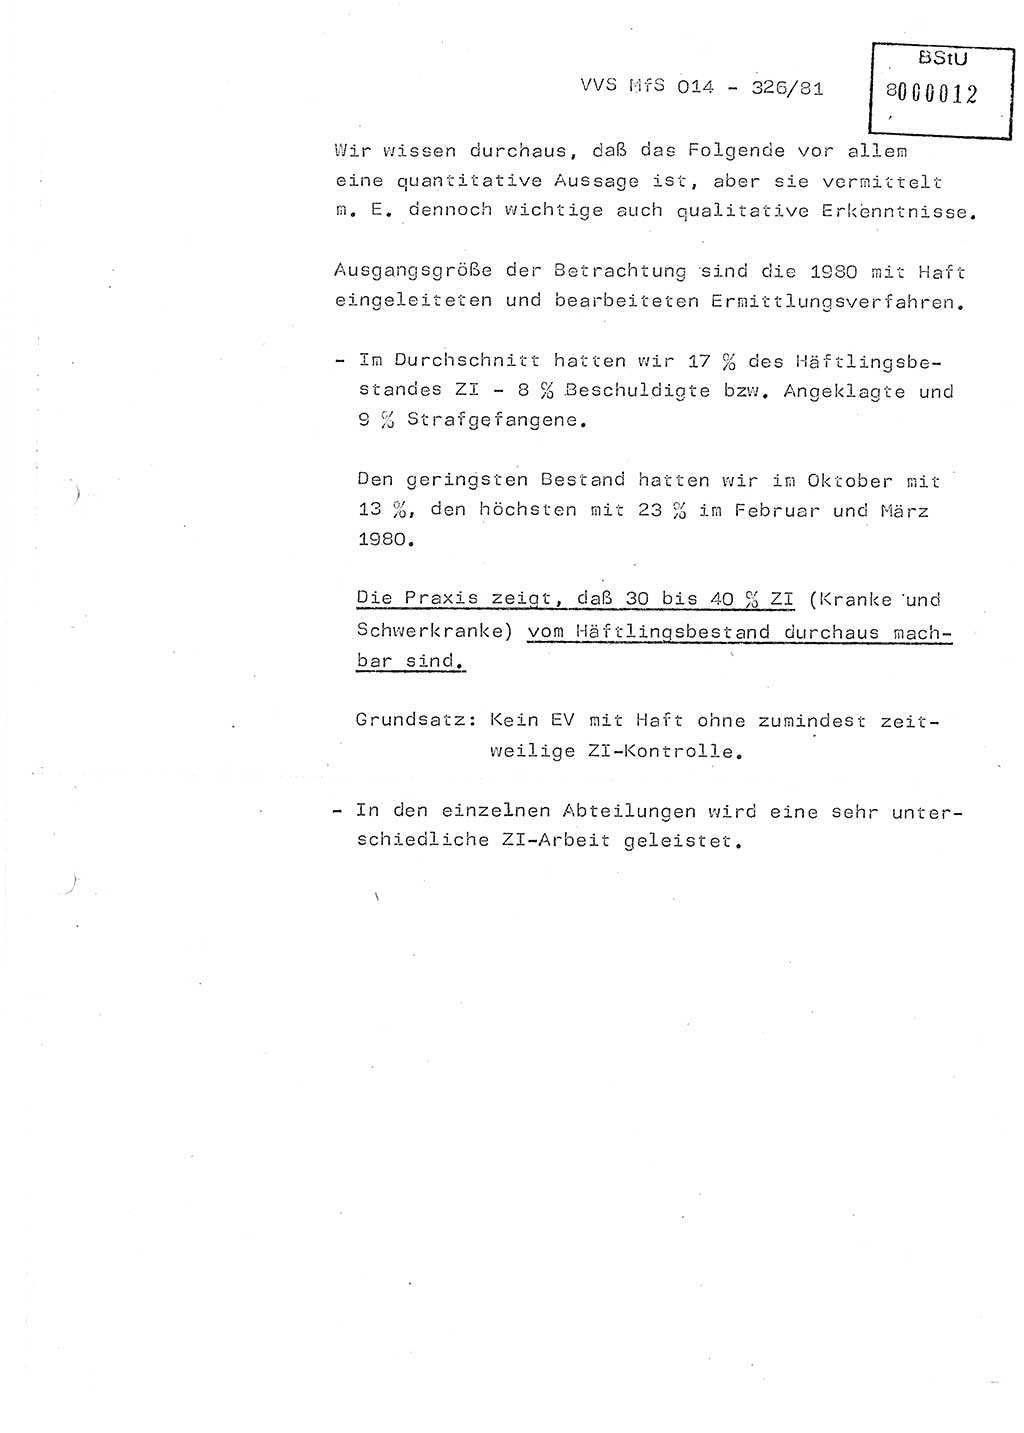 Thesen zum Einführungsvortrag für die Schulung zur Richtlinie Nr. 2/81 [zur Arbeit mit Zelleninformatoren (ZI)] des Genossen Minister (Generaloberst Erich Mielke), Ministerium für Staatssicherheit (MfS) [Deutsche Demokratische Republik (DDR)], Hauptabteilung (HA) Ⅸ, Vertrauliche Verschlußsache (VVS) 014-326/81, Berlin 1981, Seite 8 (Th. Sch. RL 2/81 MfS DDR HA Ⅸ VVS 014-326/81 1981, S. 8)